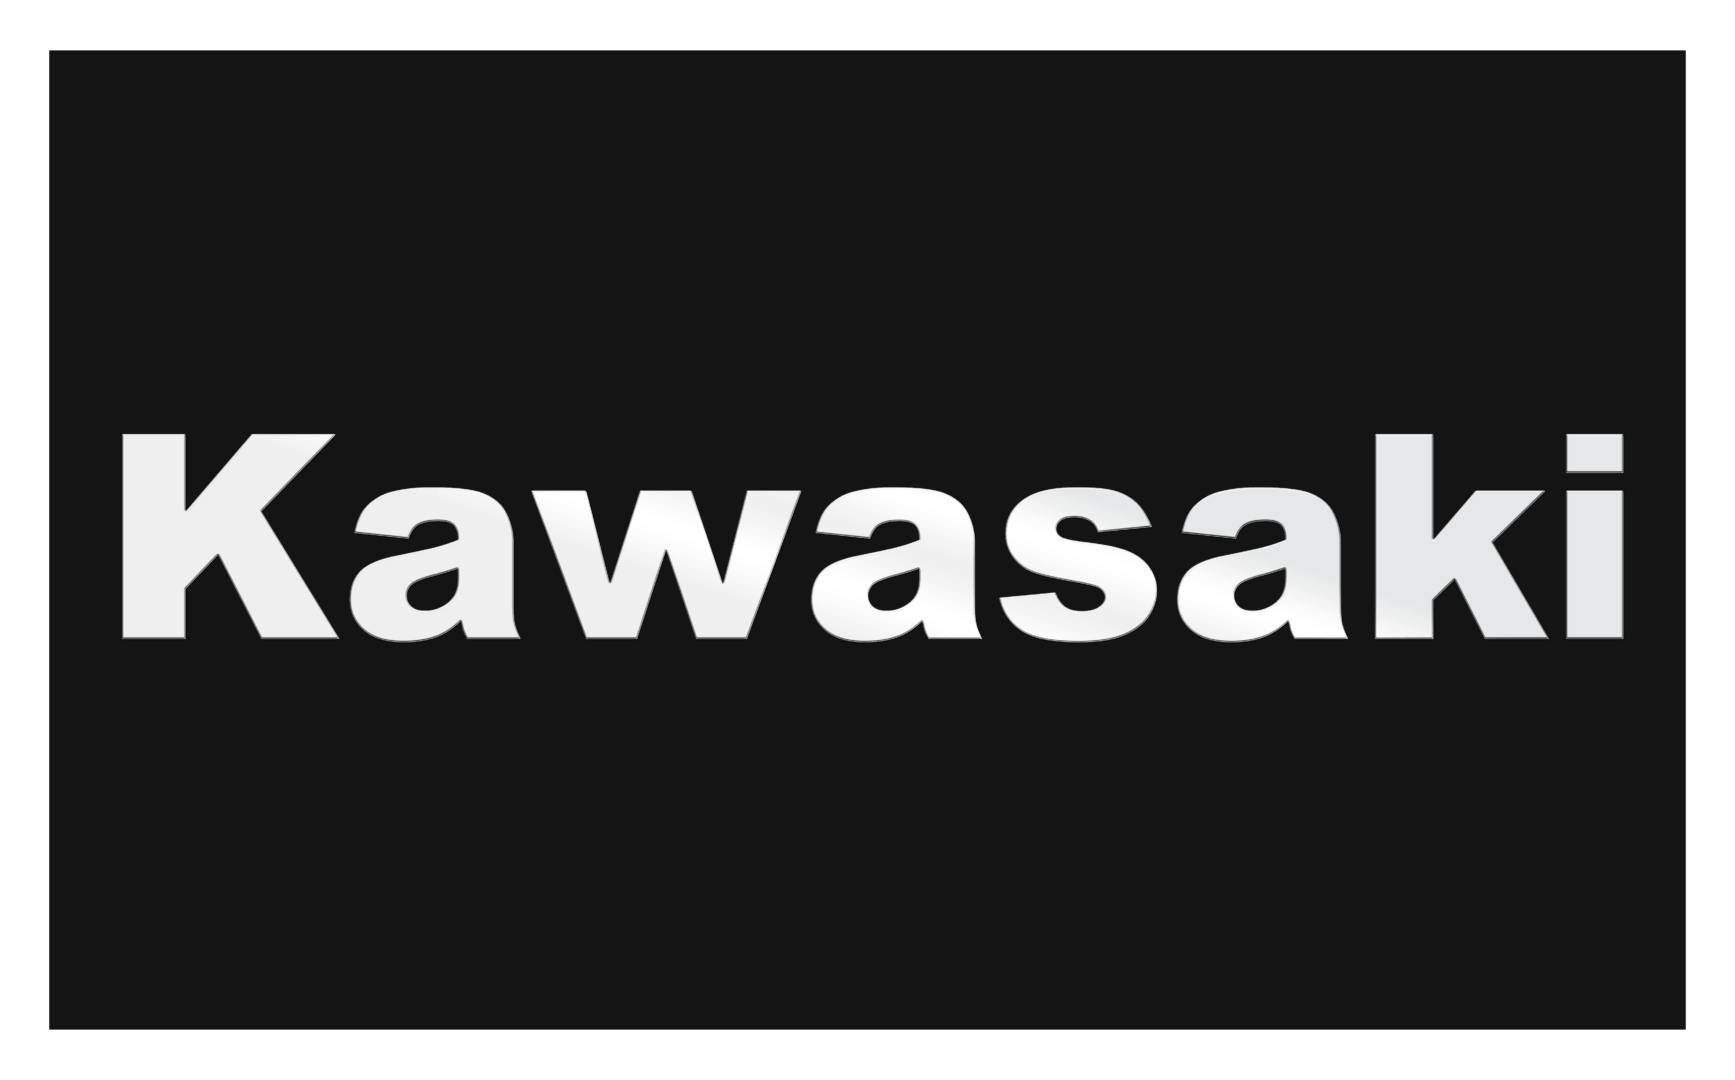 kawasaki logo history